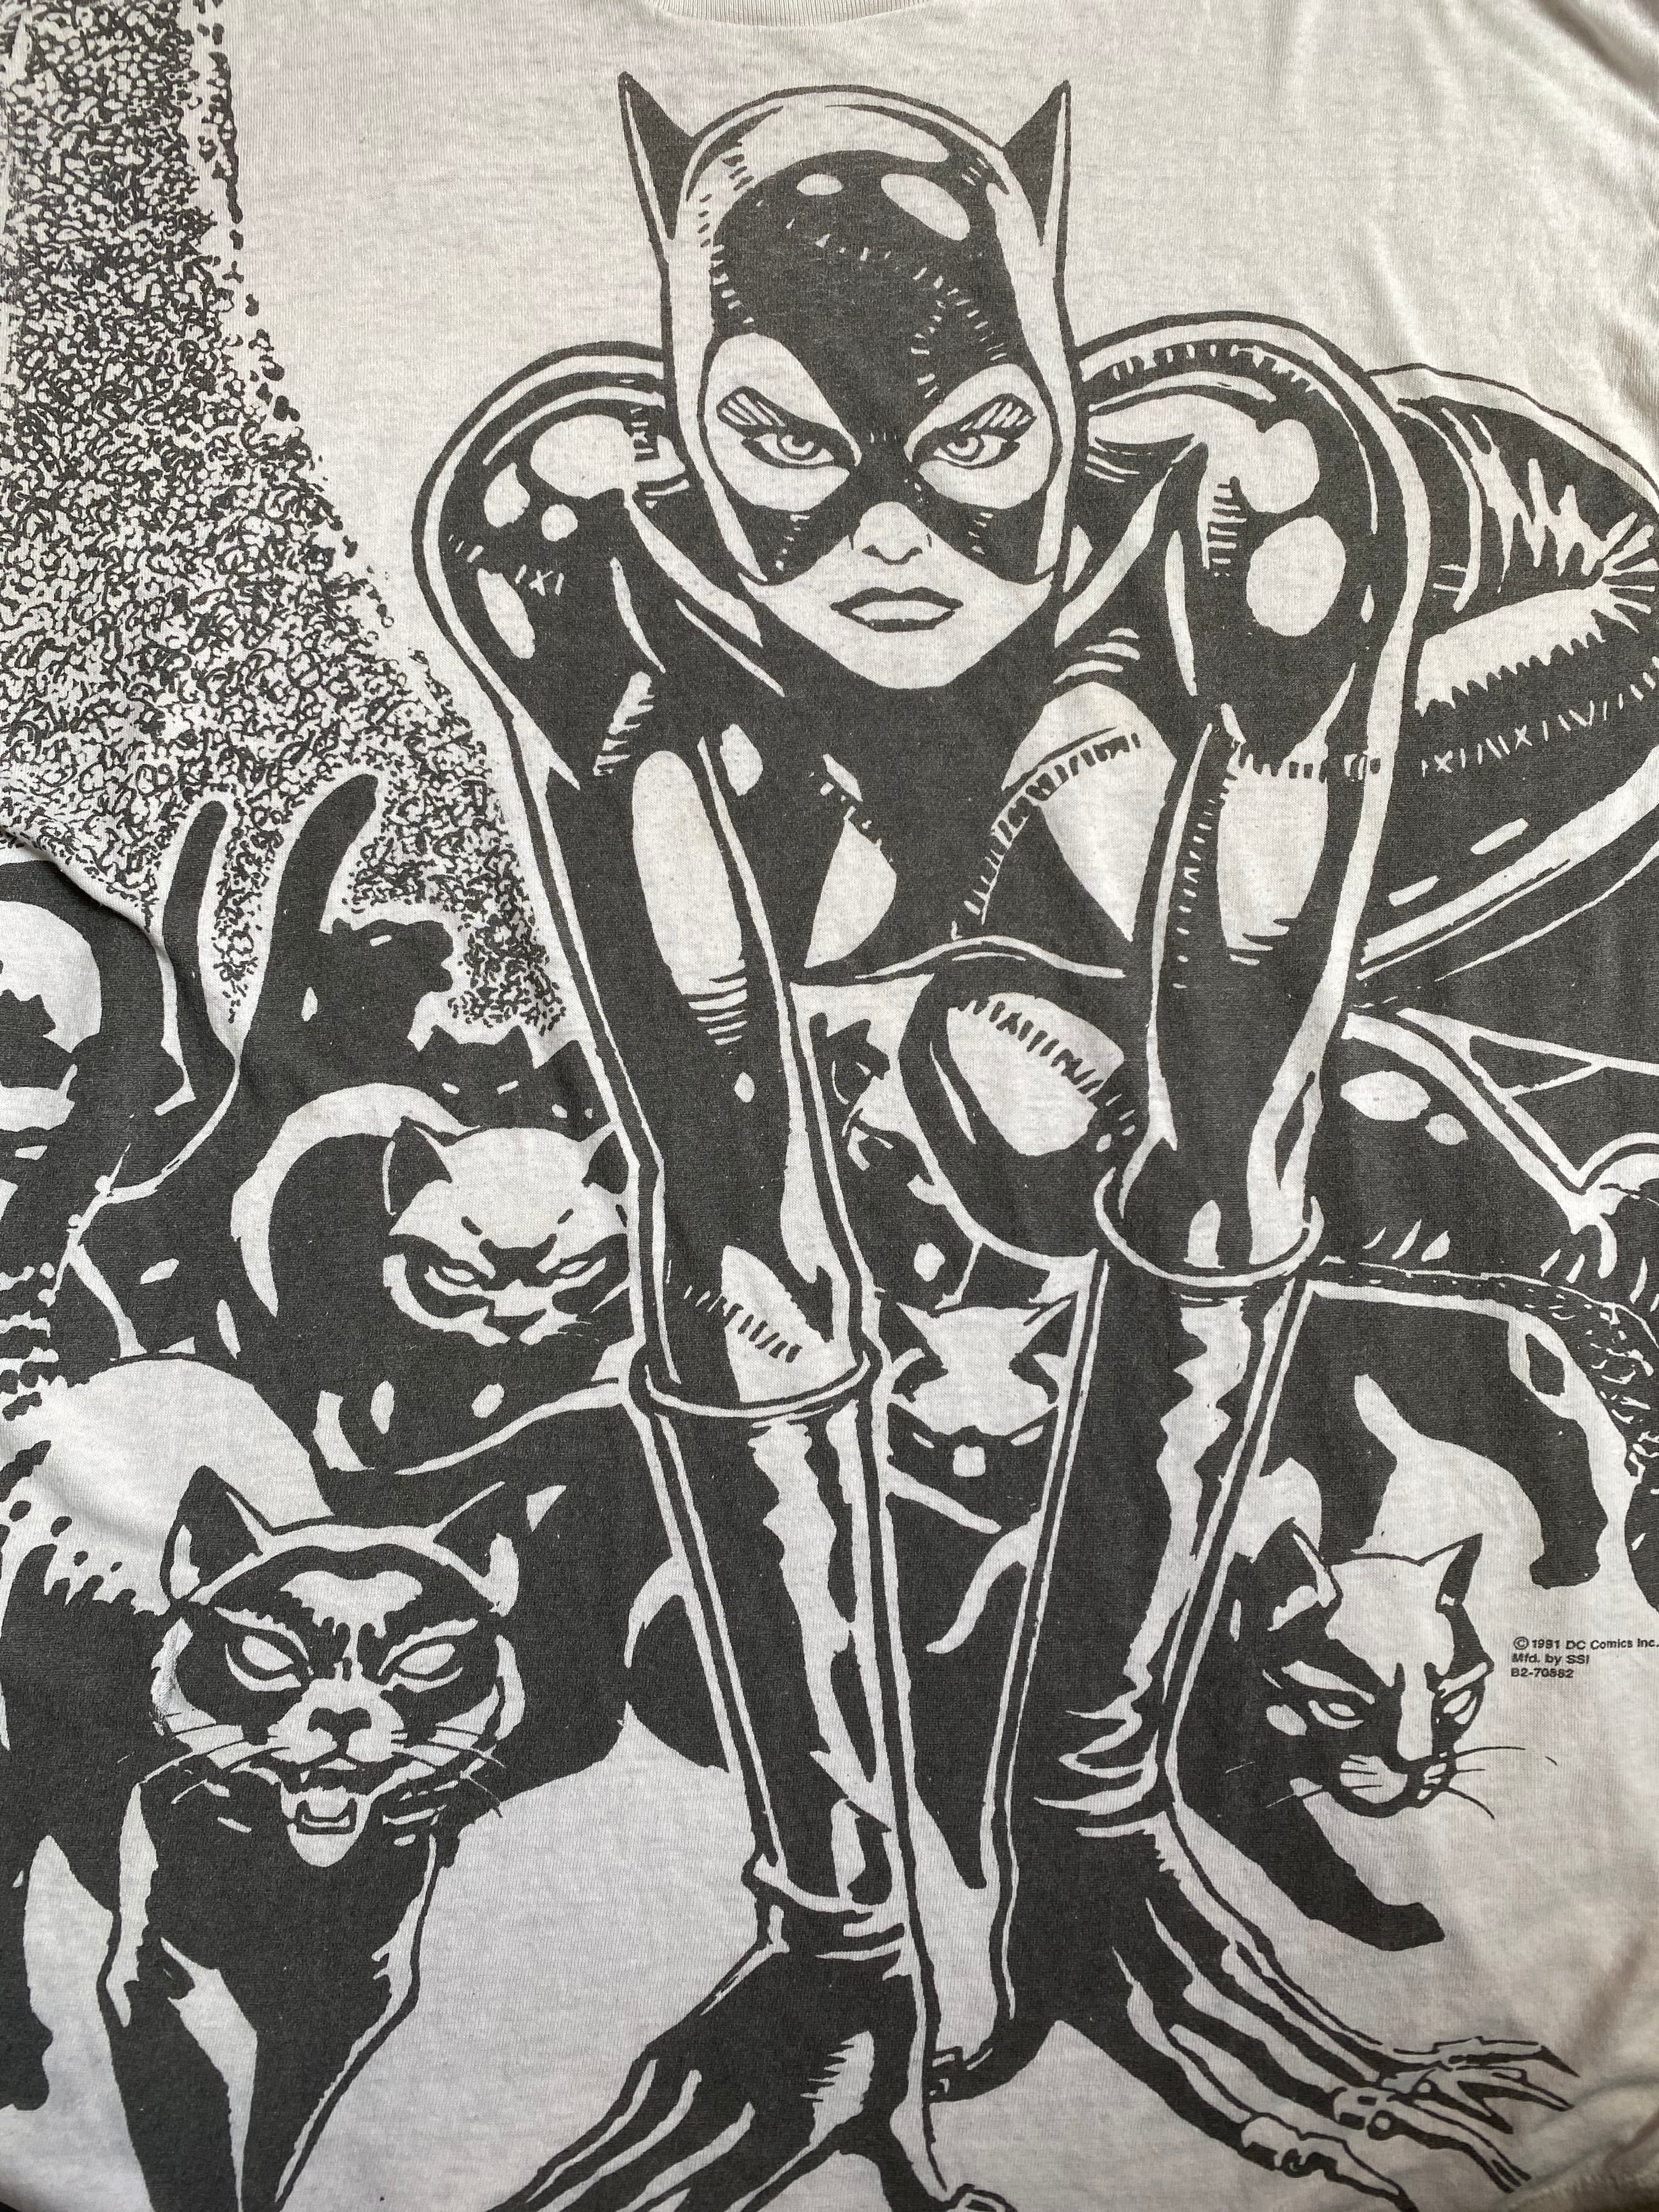 U.S.VINTAGE U.S. ヴィンテージ Tシャツ サイズ：XL Cat woman キャットウーマン シングルステッチ DC Comics USA製 1992年製 90s ブラック 黒 トップス 半袖 クルーネック シンプル カジュアル ブランド【メンズ】